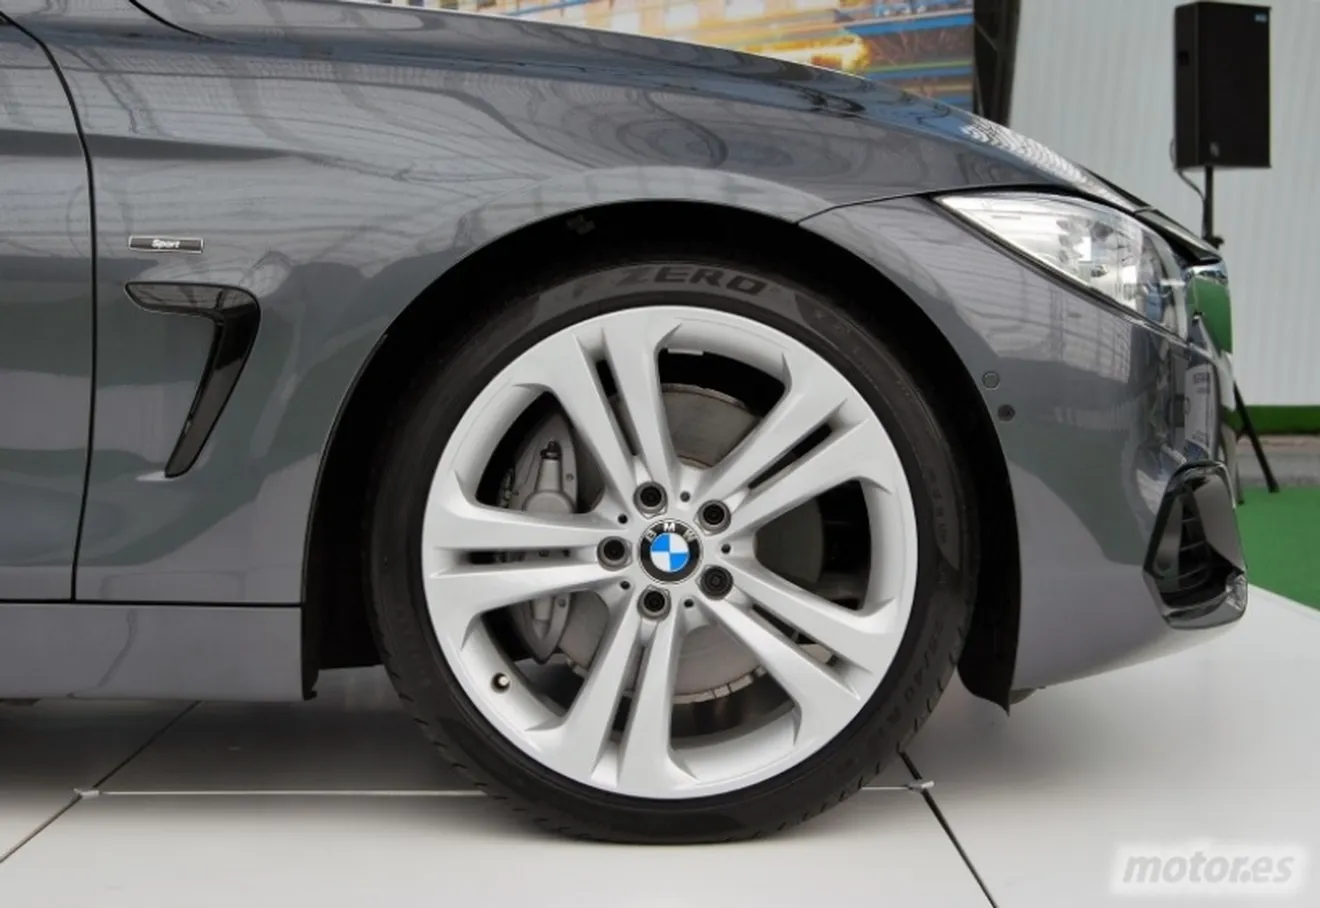 BMW Serie 4 Coupé, presentación (II): diseño interior, habitabilidad, maletero y equipamiento